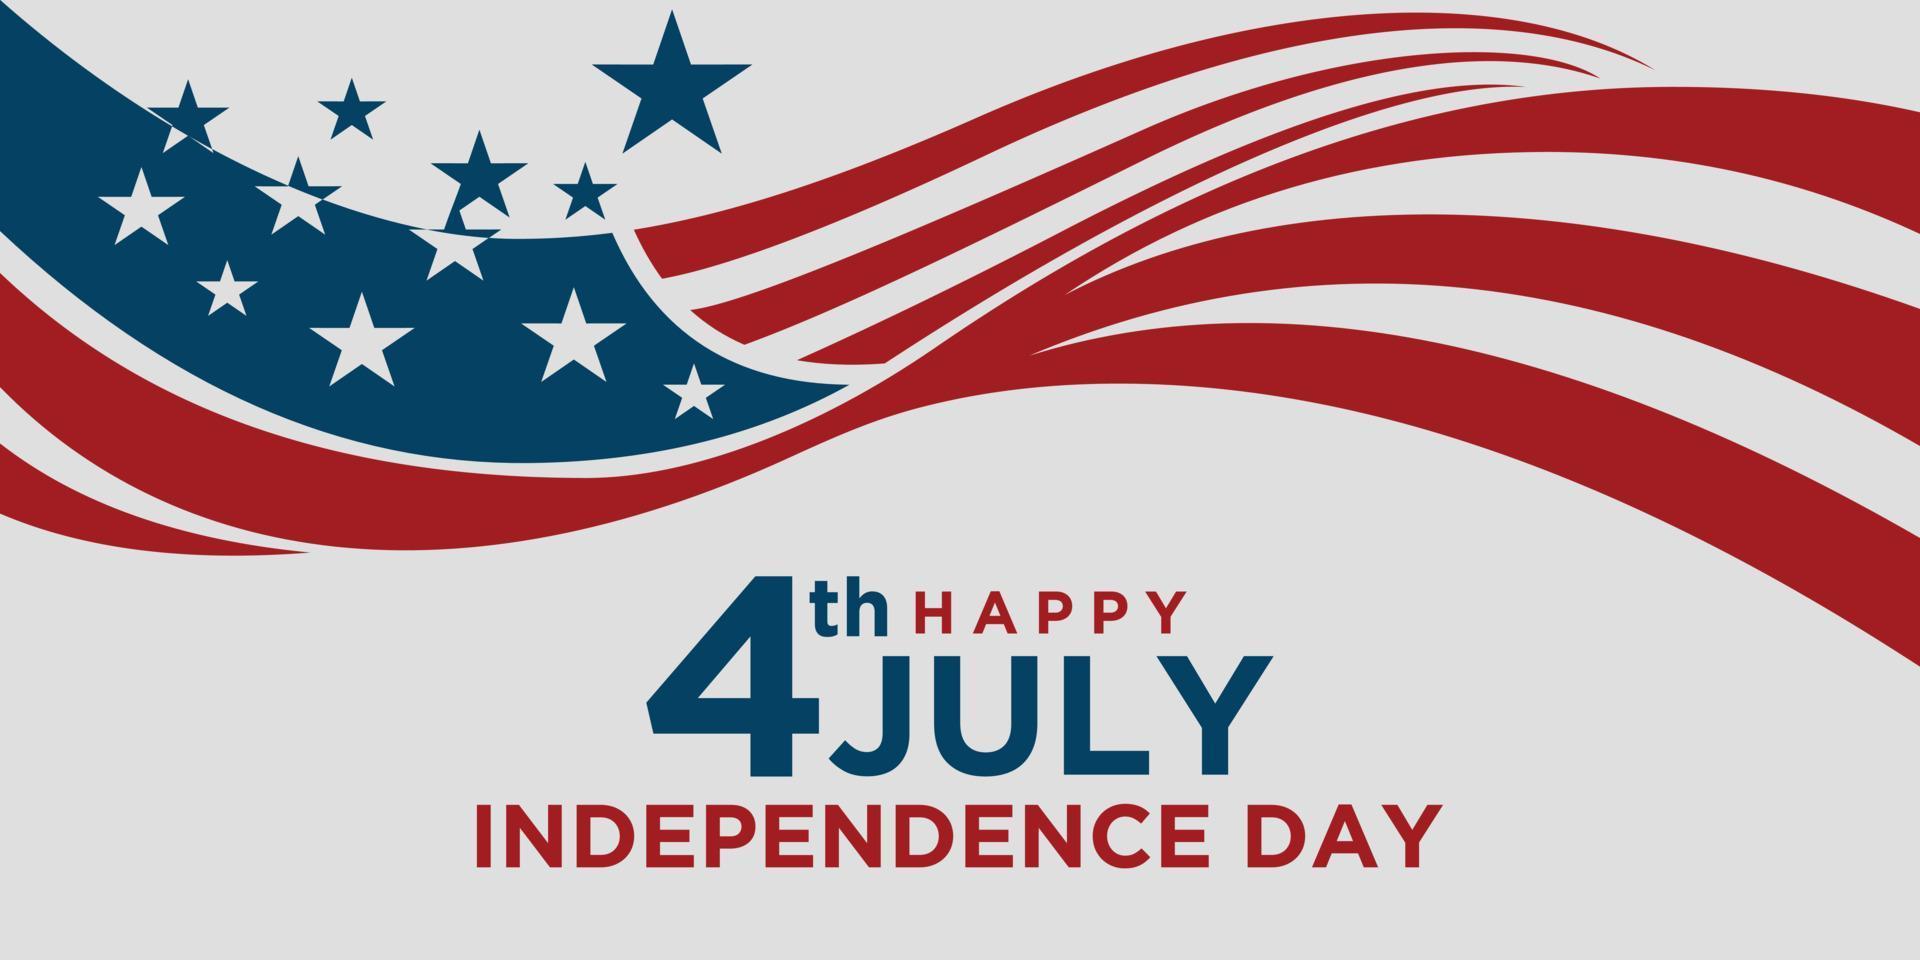 Frohe Feiertage am 4. Juli in den USA. amerikanische Unabhängigkeitstag-Grußkarten-Vektorillustration vektor